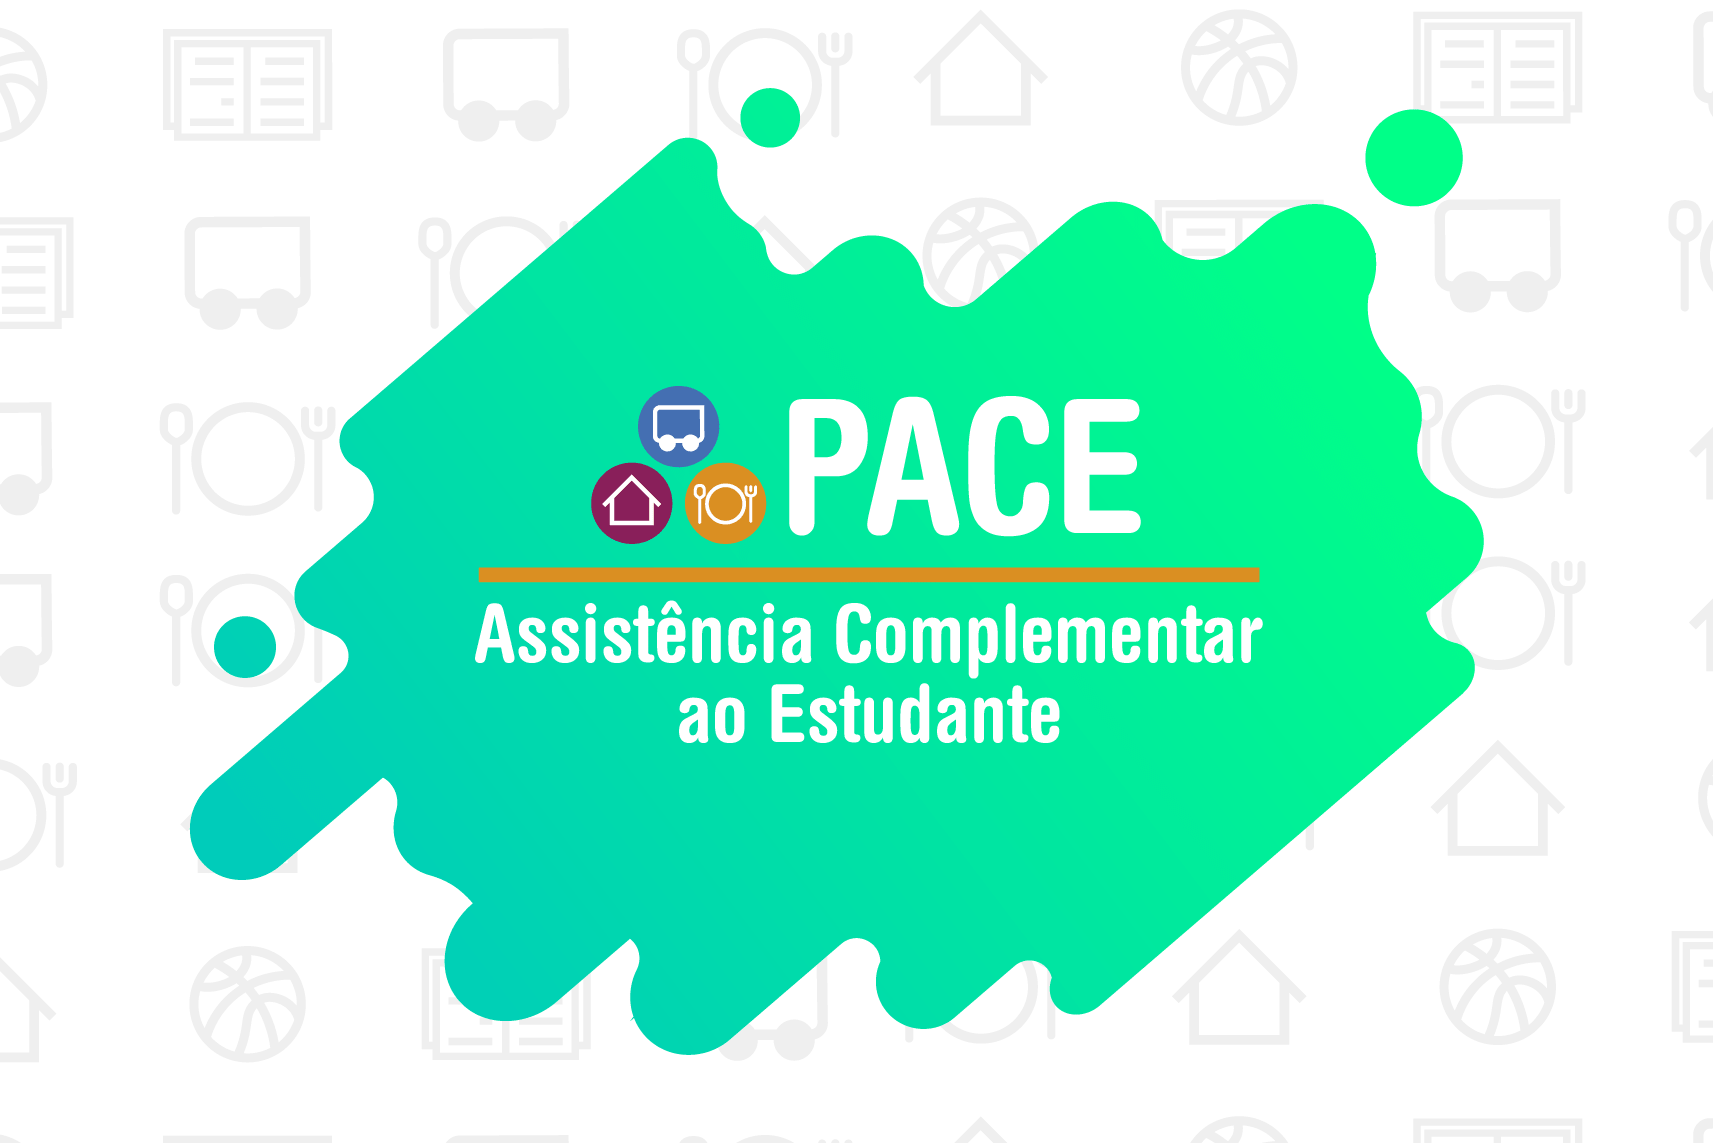 "Pace. Assistência Complementar ao Estudante"